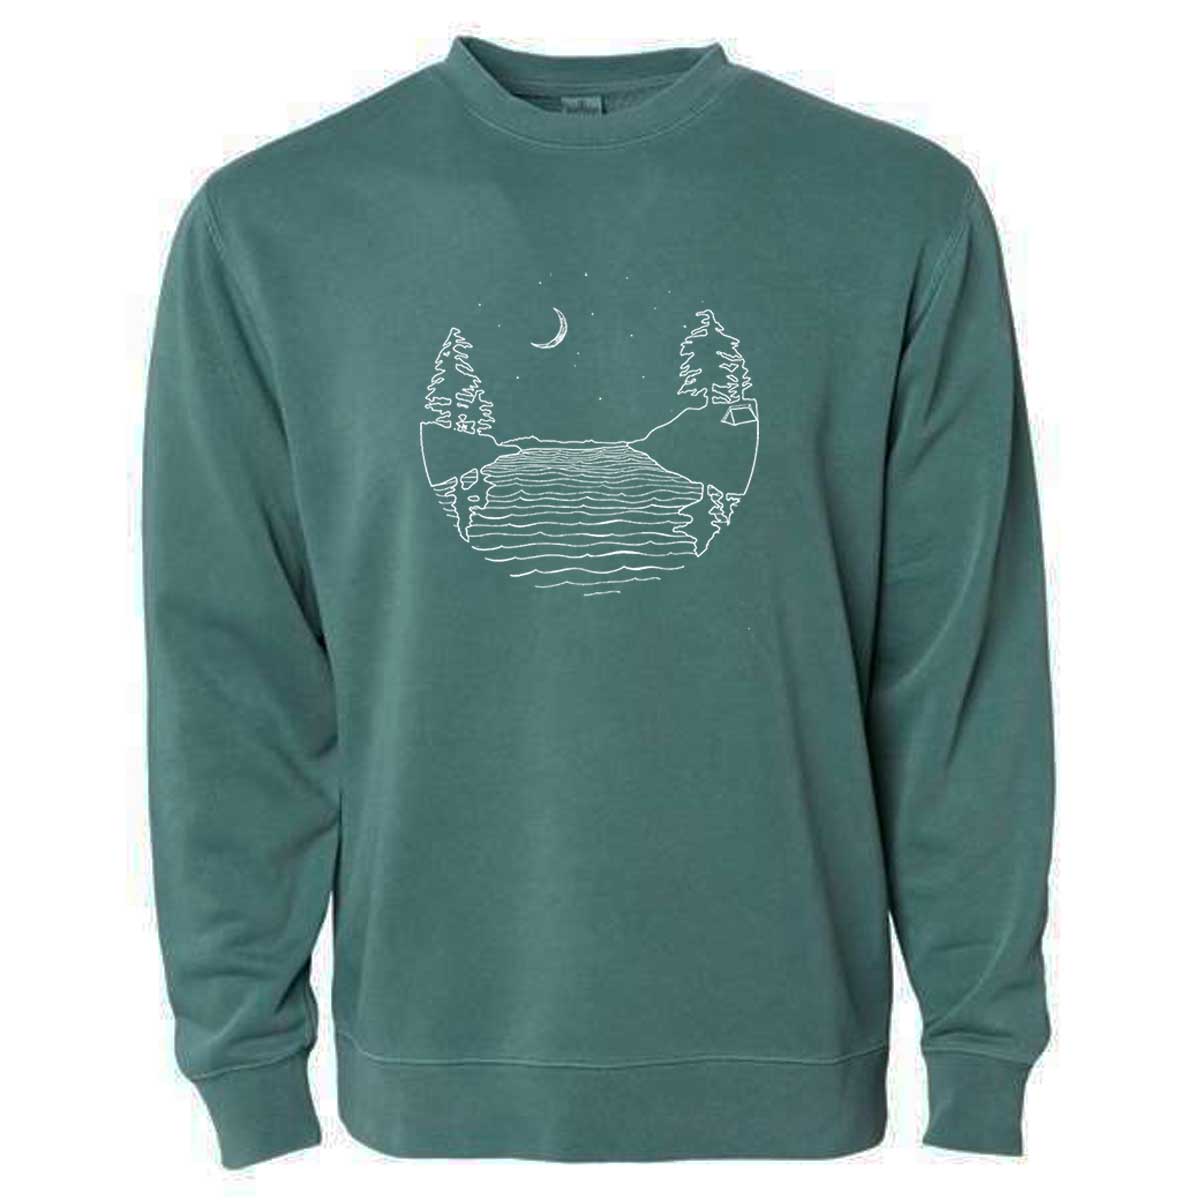 Island at Night - Unisex Pigment-Dyed Crew Sweatshirt (Alpine Green) Unisex_Sweatshirt Printshop Northwest 